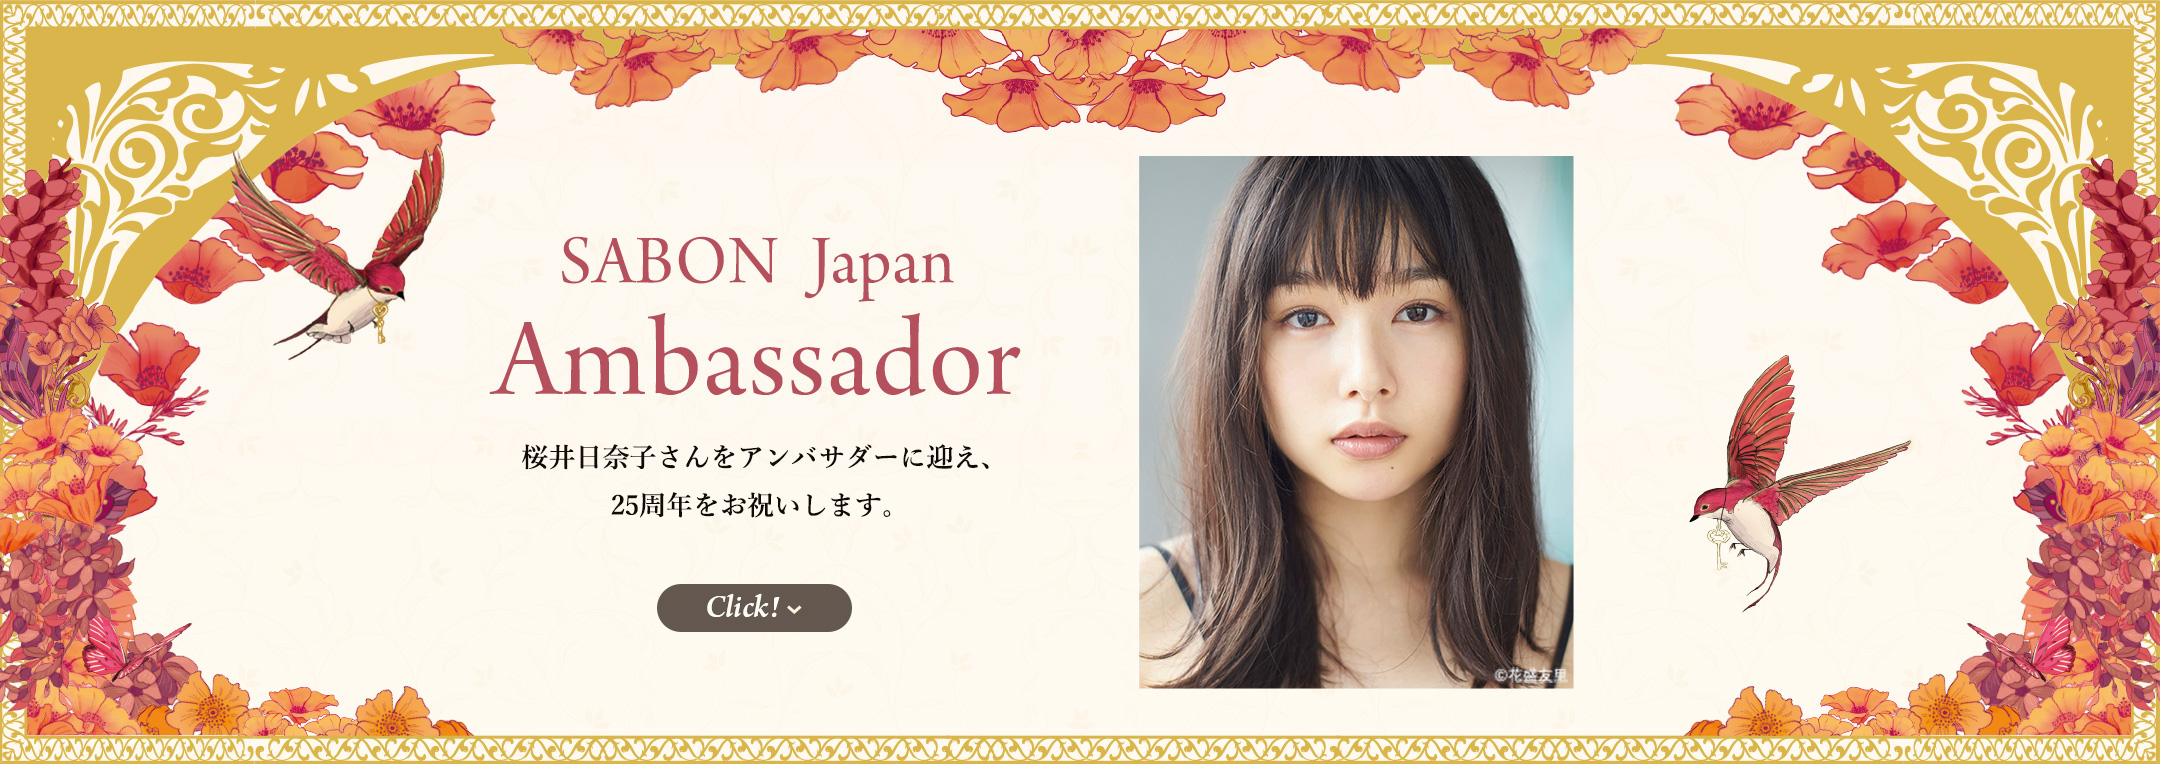 SABON Japan Ambassador 桜井日奈子さんをアンバサダーに迎え、25周年をお祝いします。 Click!